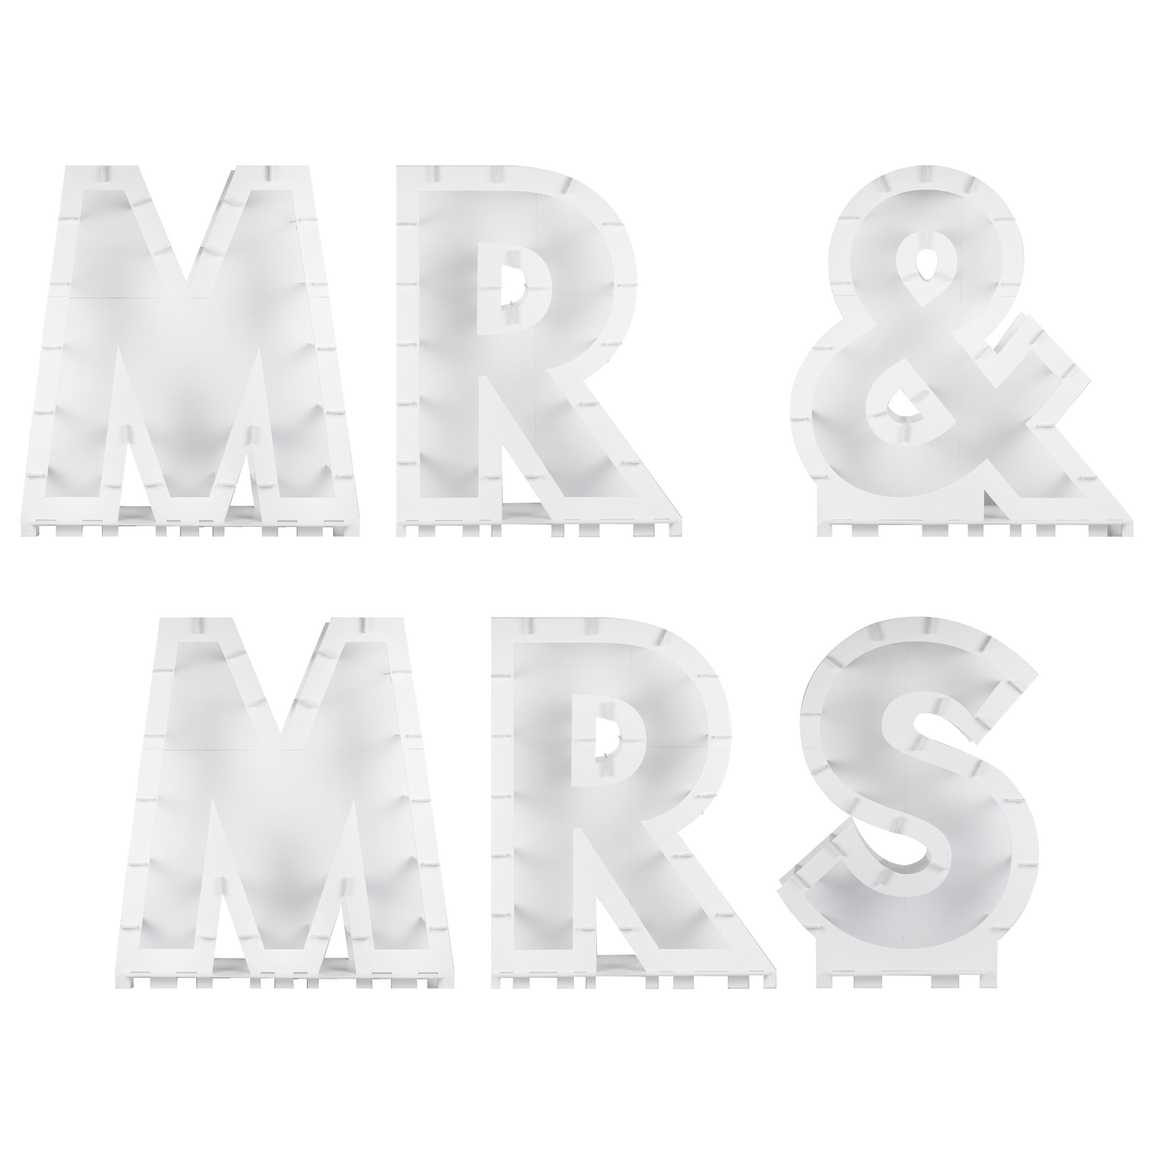 Mr & Mrs. Mosaik stand